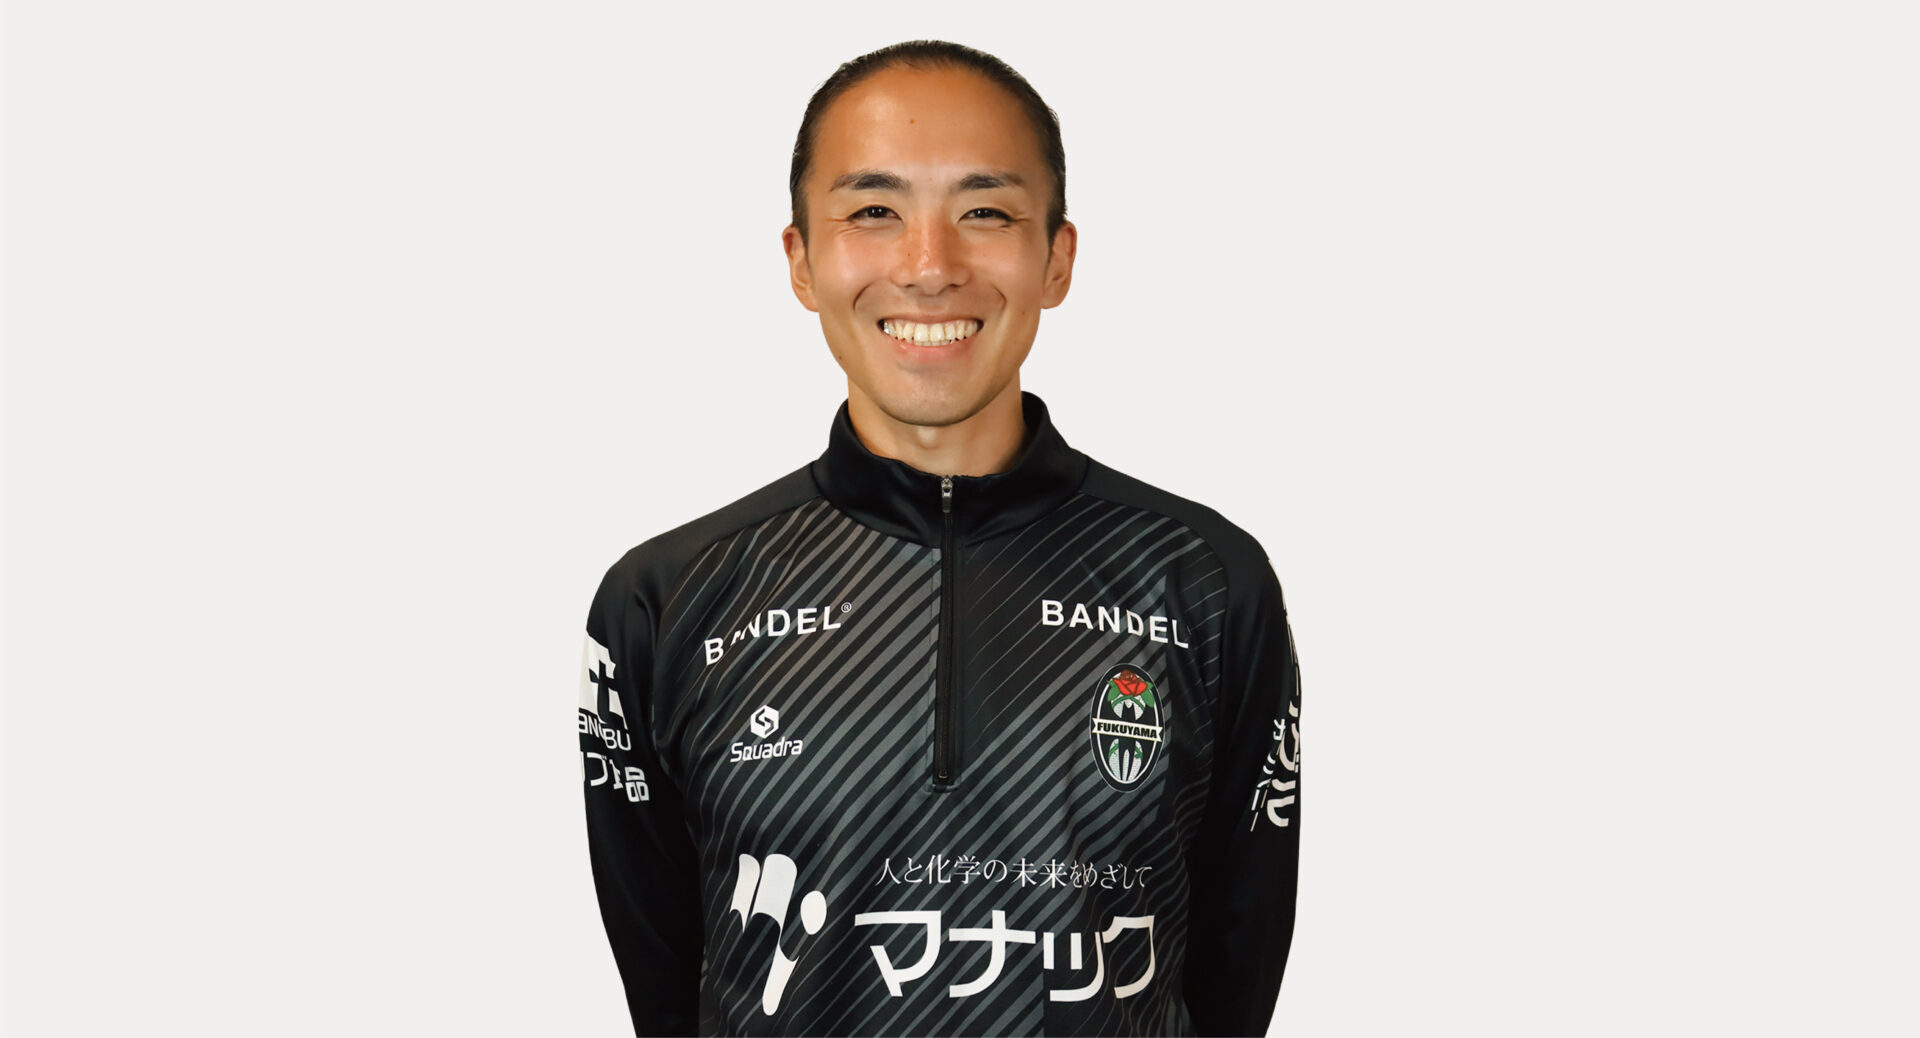 アシスタントコーチ 内田 陽平 / Yohei Uchida